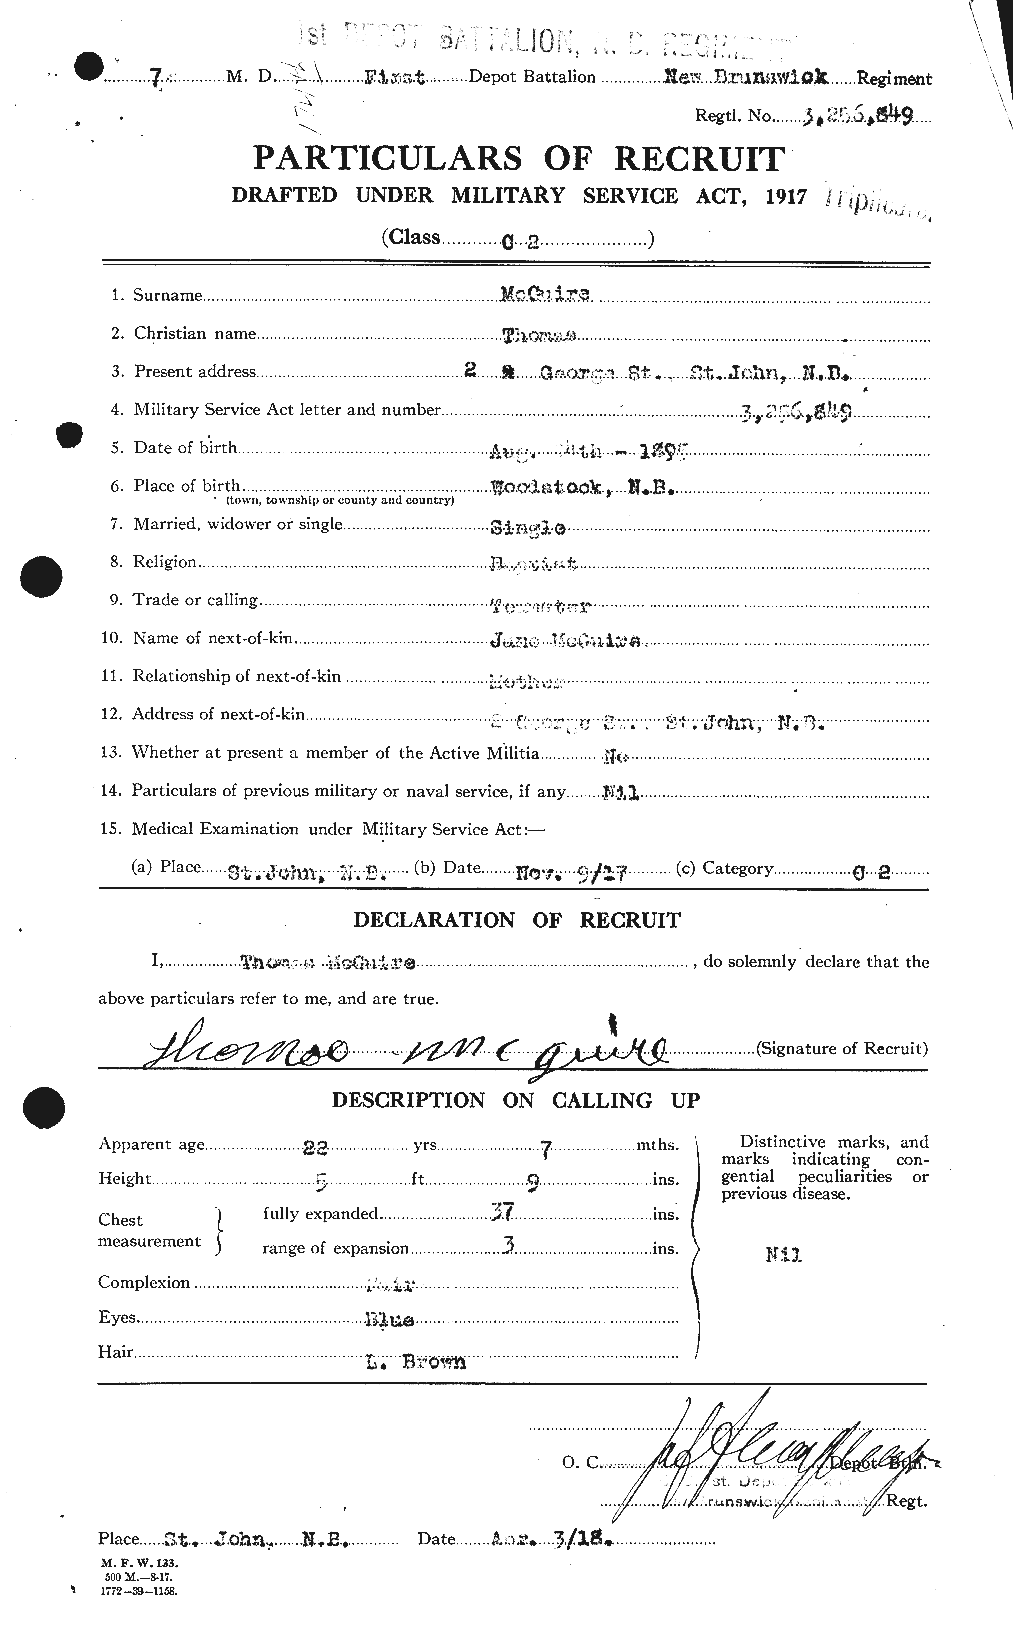 Dossiers du Personnel de la Première Guerre mondiale - CEC 524124a